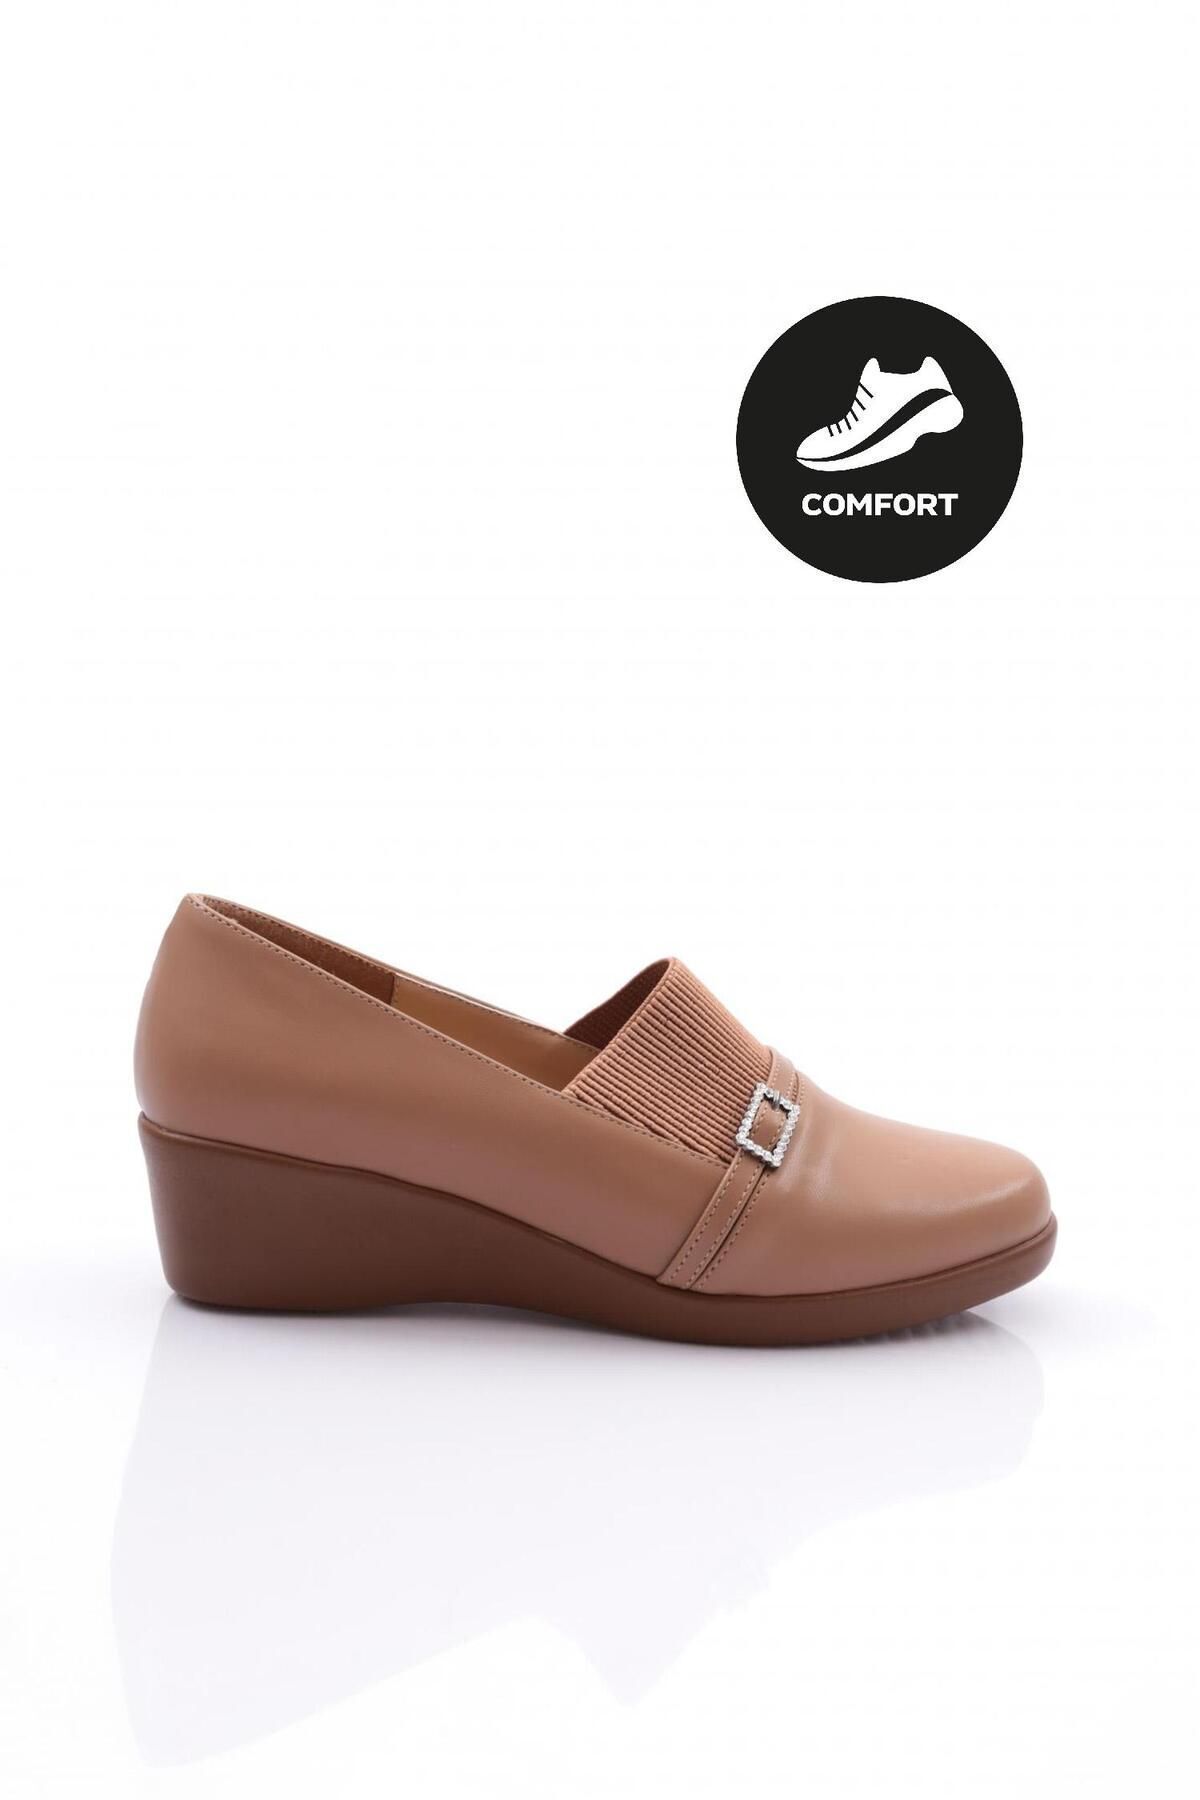 Dgn 23092 Kadın Comfort Ayakkabı Vizon